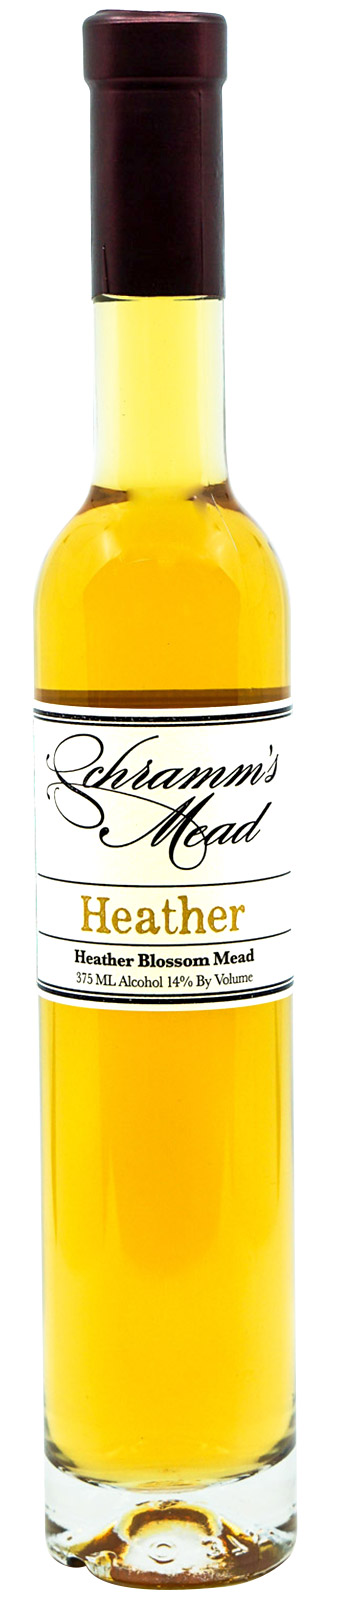 Schramm's Heather Mead